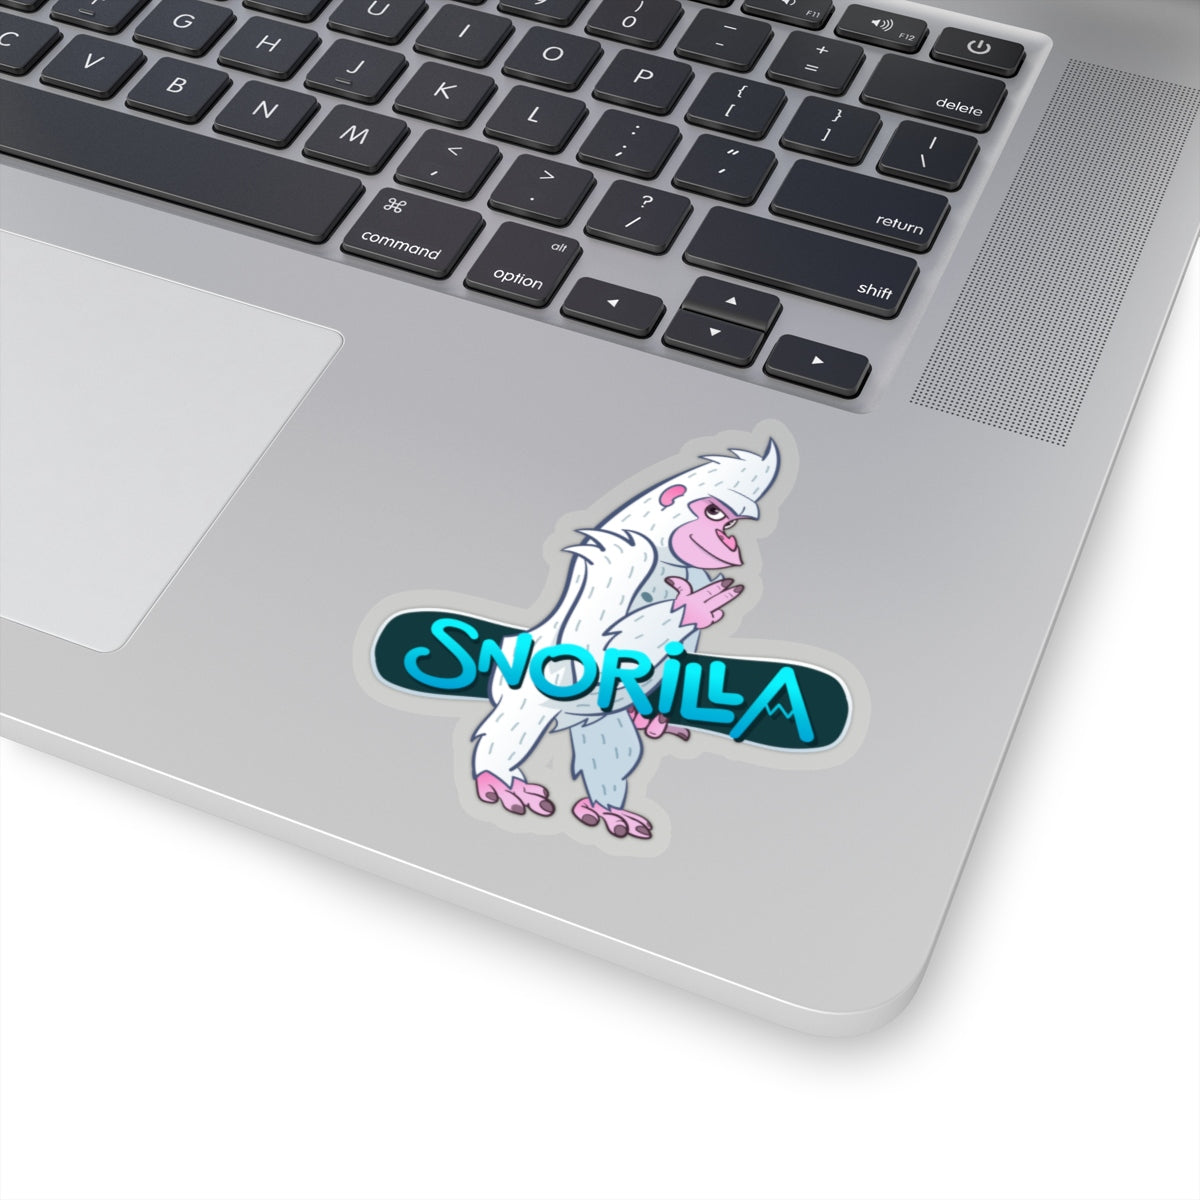 Snorilla sticker - Sno Cal